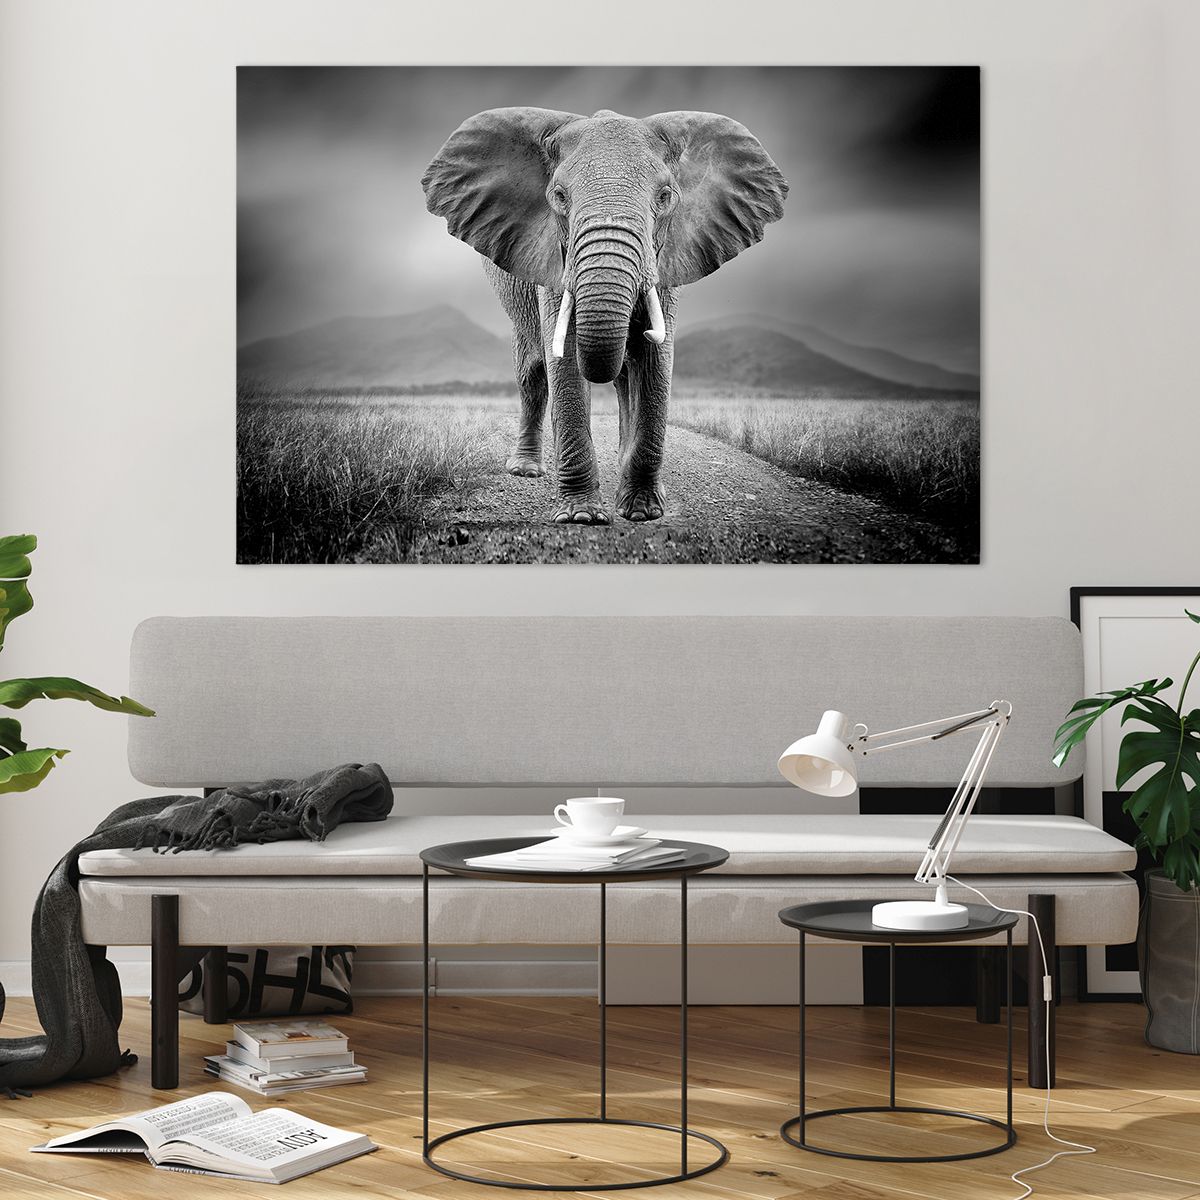 Bilder auf glas Elefant, Bilder auf glas Tiere, Bilder auf glas Landschaft, Bilder auf glas Natur, Bilder auf glas Afrika